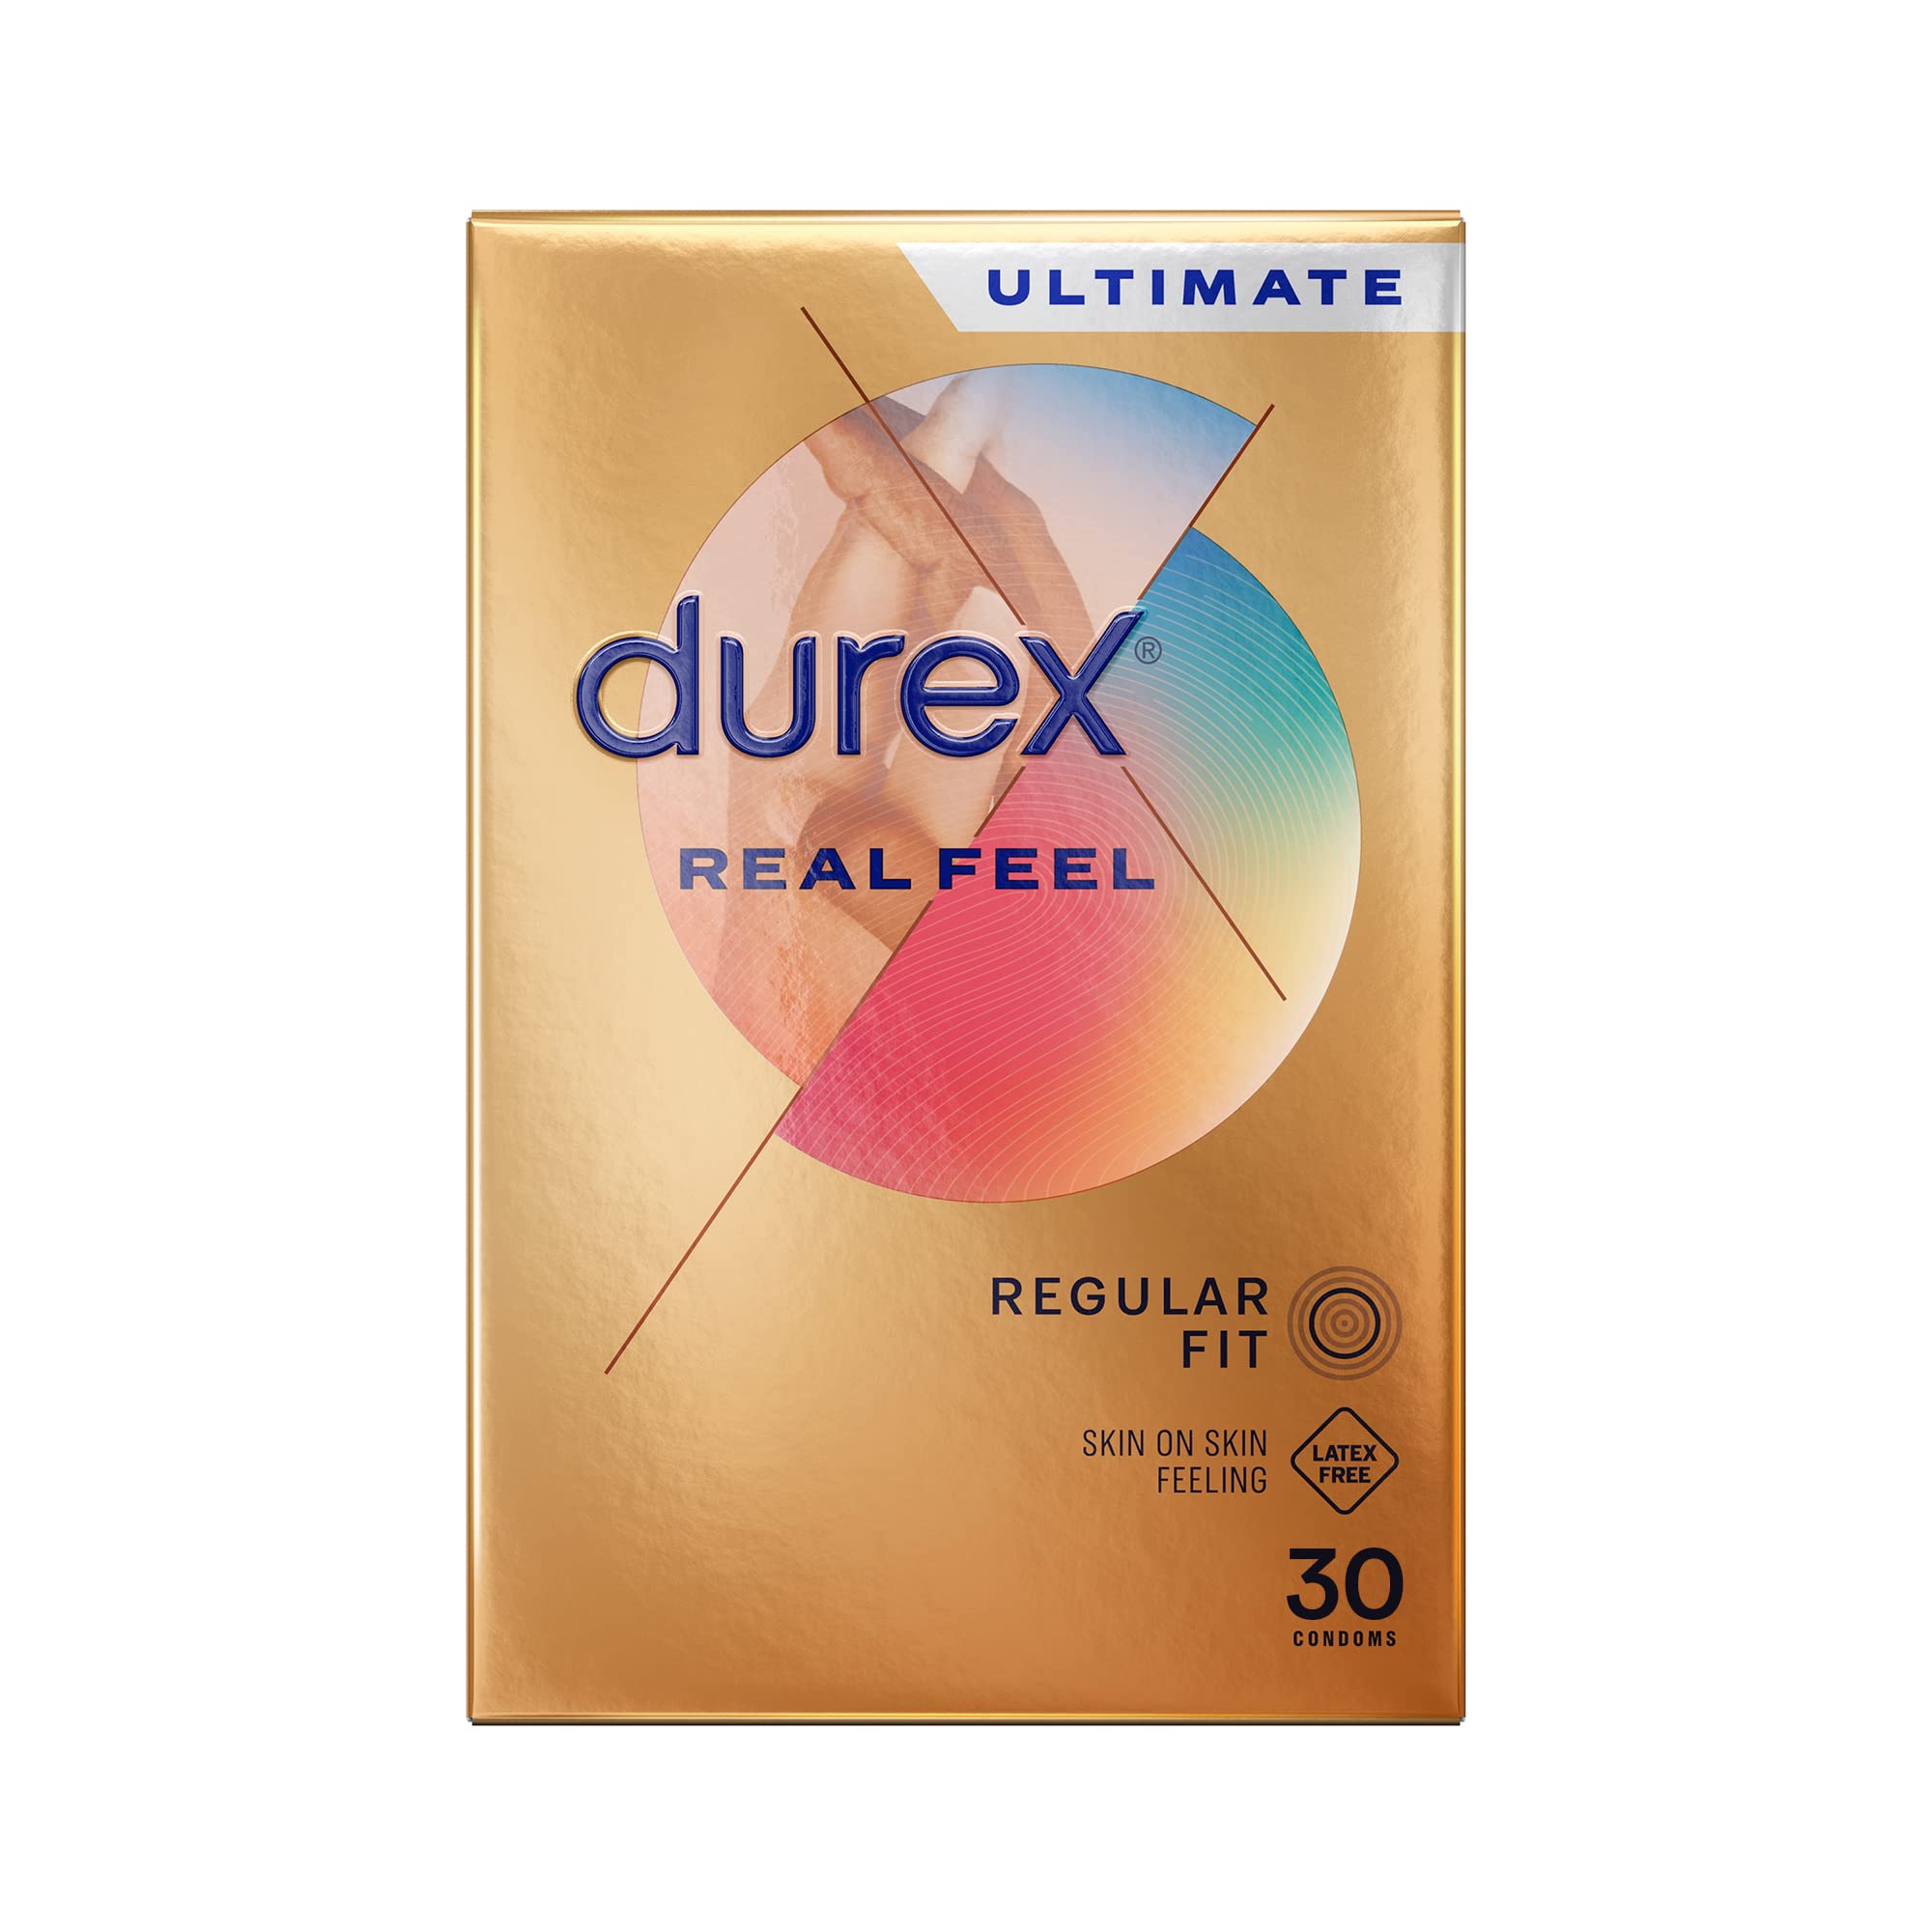 Durex Real Feel Latex Free Condoms, Pack 30